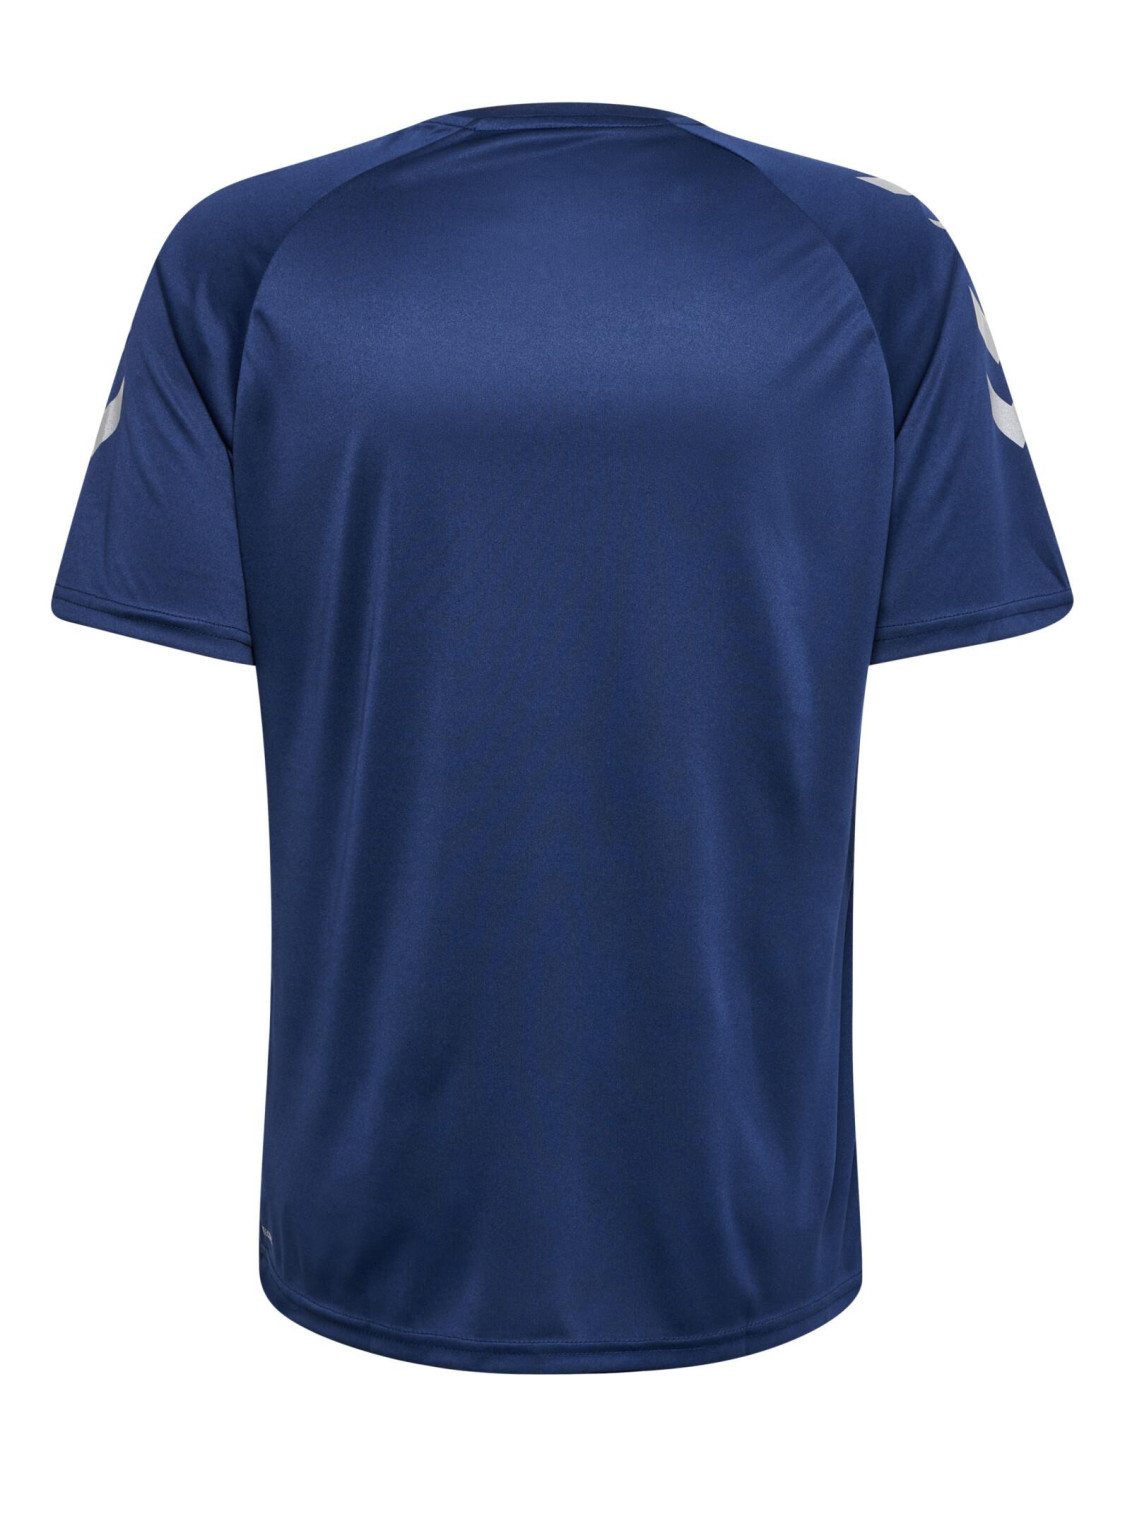 granatowa koszulka sportowa logo kontrast wstawki